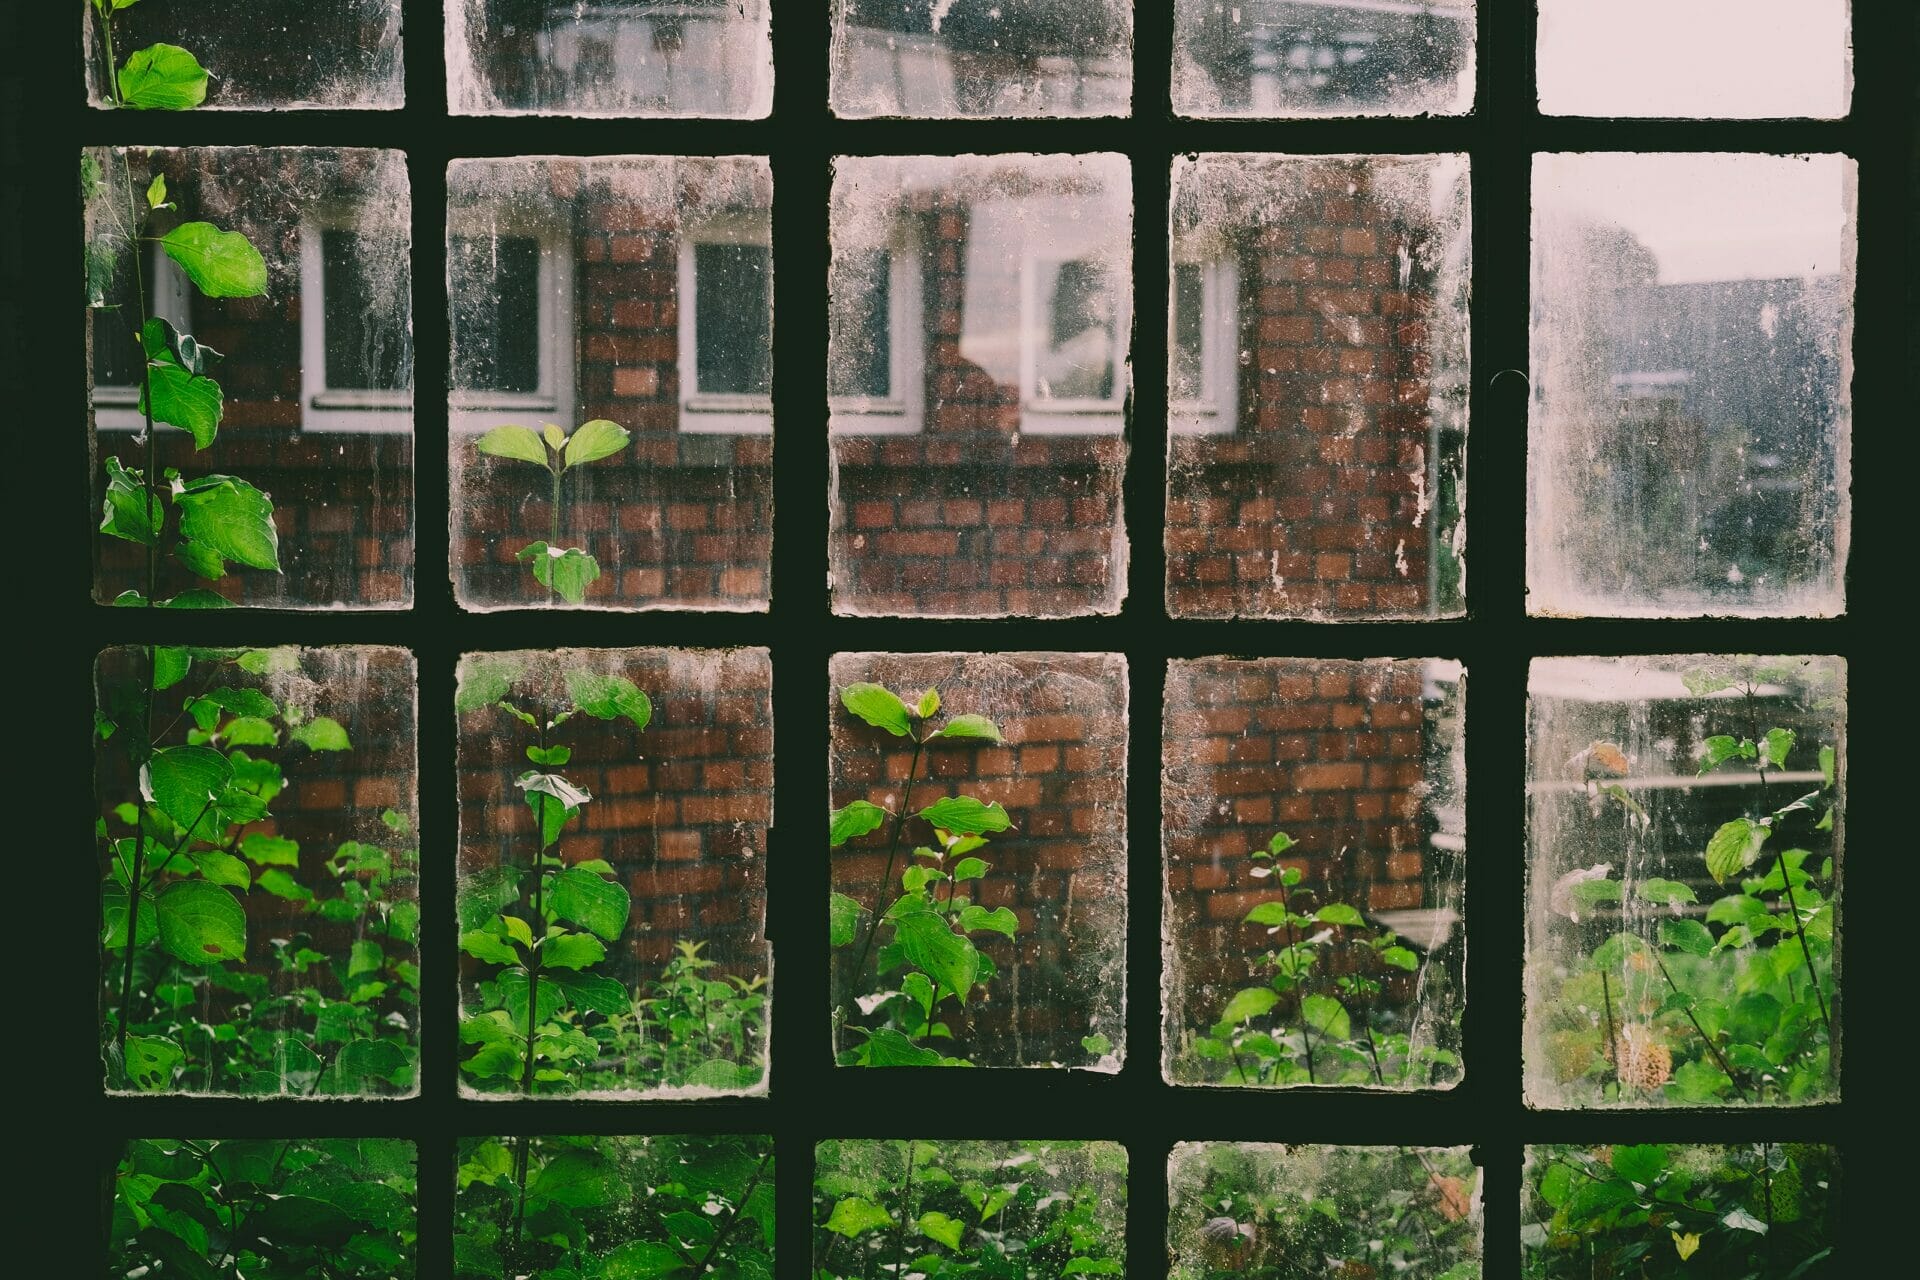 Doorzichtige glas in lood ramen waardoor je een tuin ziet met groen en het huis van de overburen